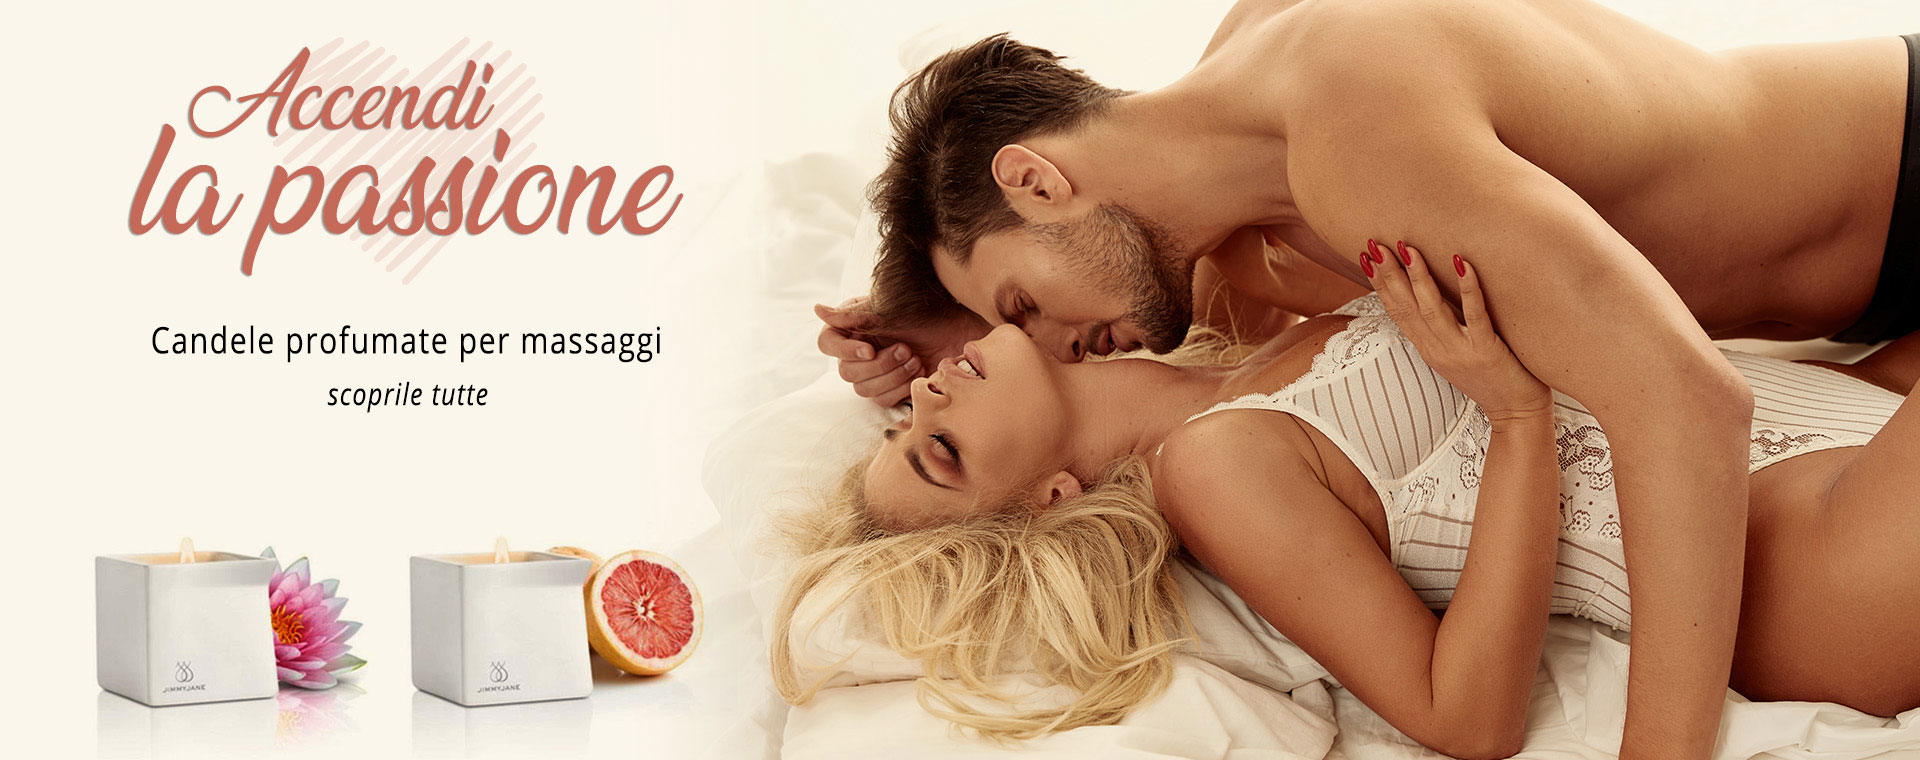 Blog erotico e consigli piccanti • THAMO - That's Amore!